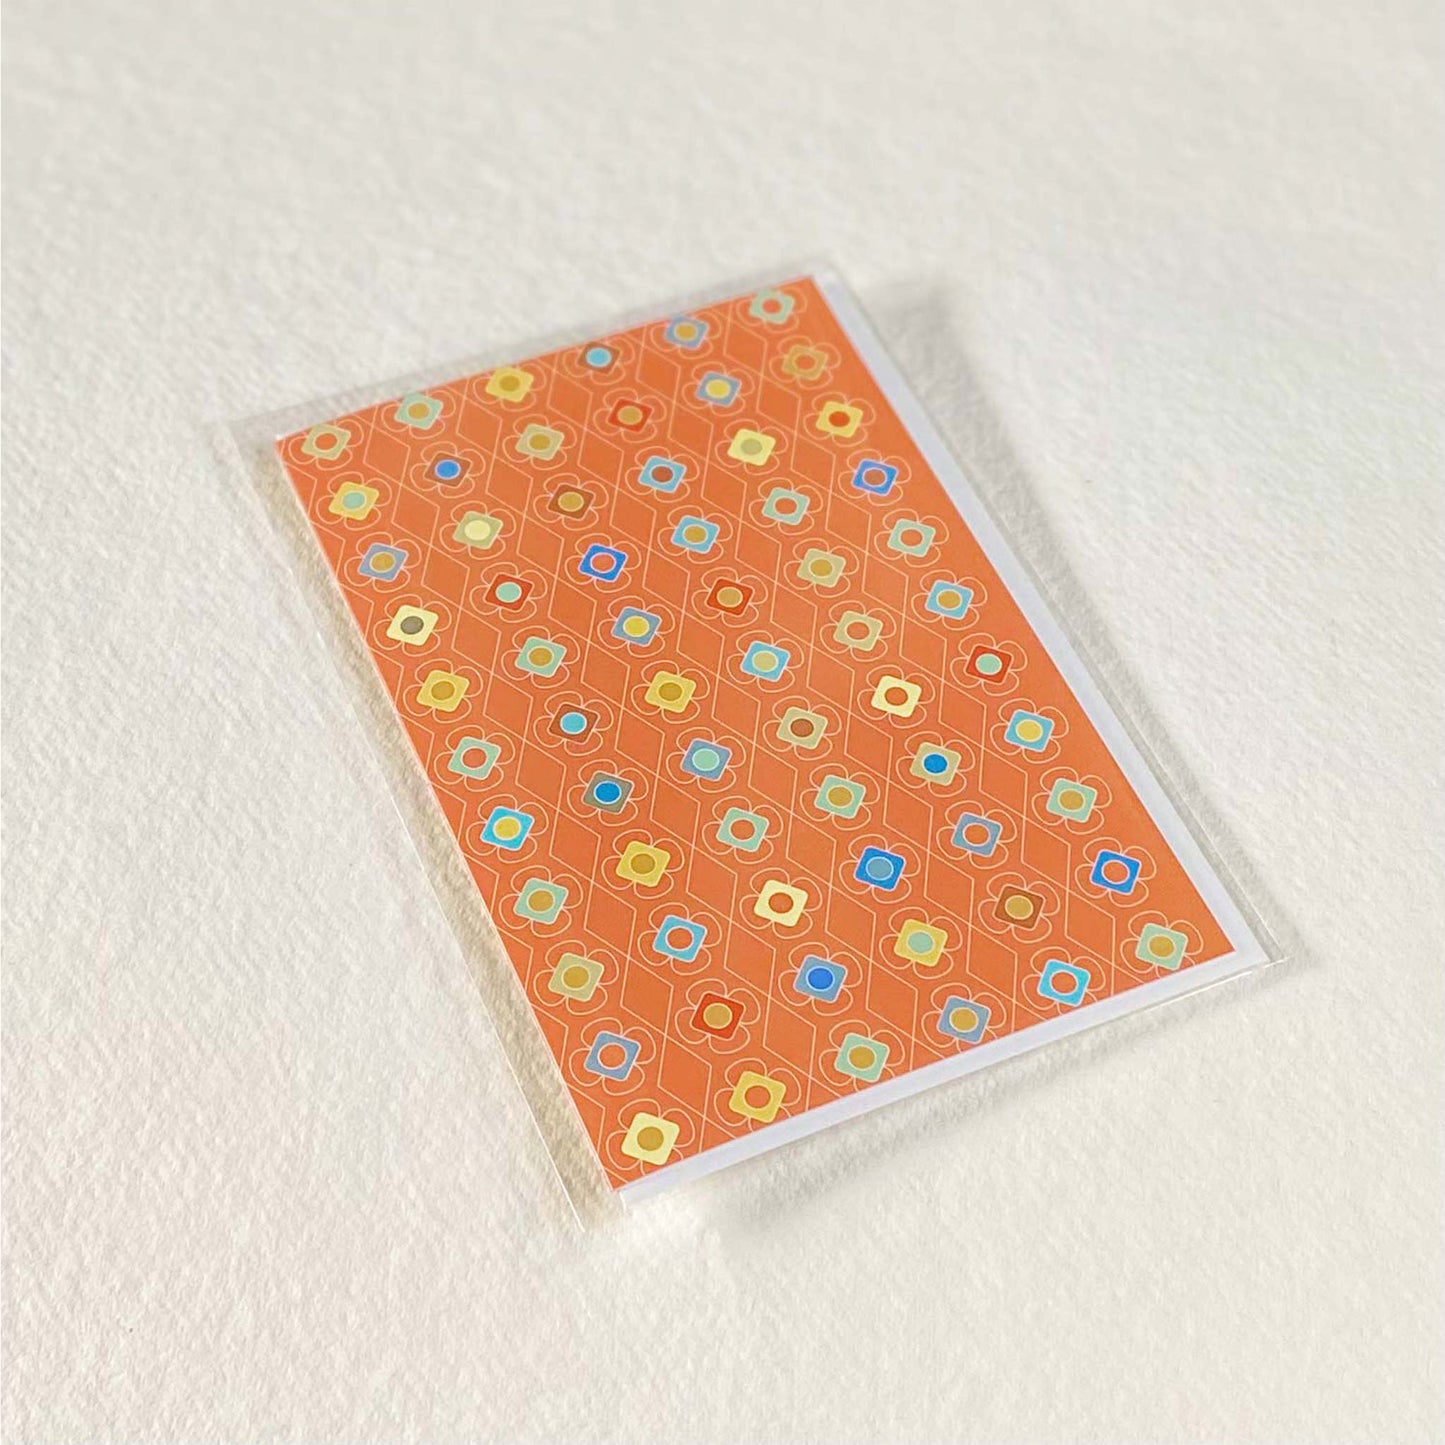 Productafbeelding foto wenskaart "kleur carrousel oranje" in verpakking